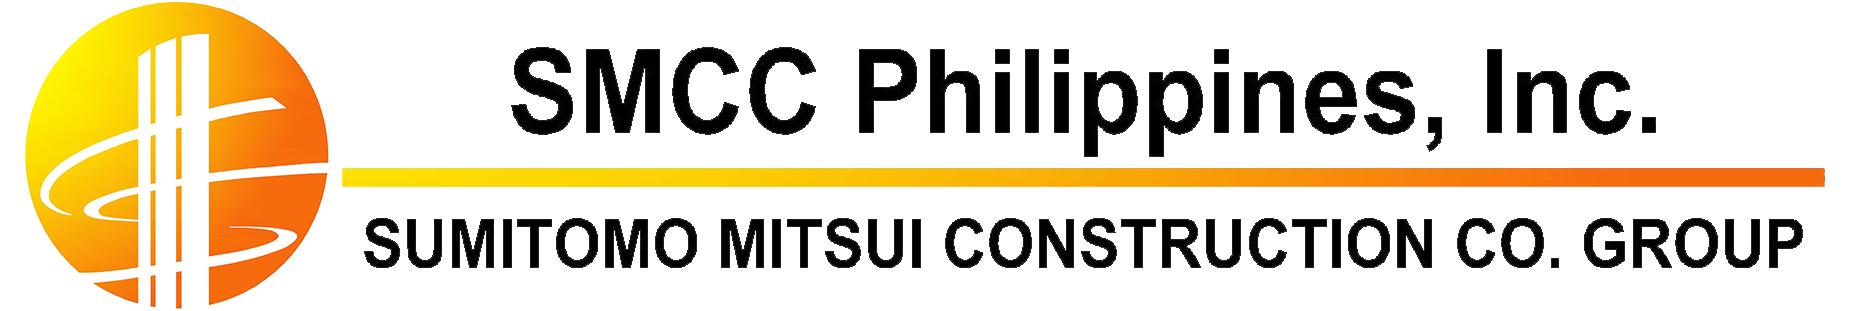 Smcc Logo - SMCC Logo | iPower Products Philippines